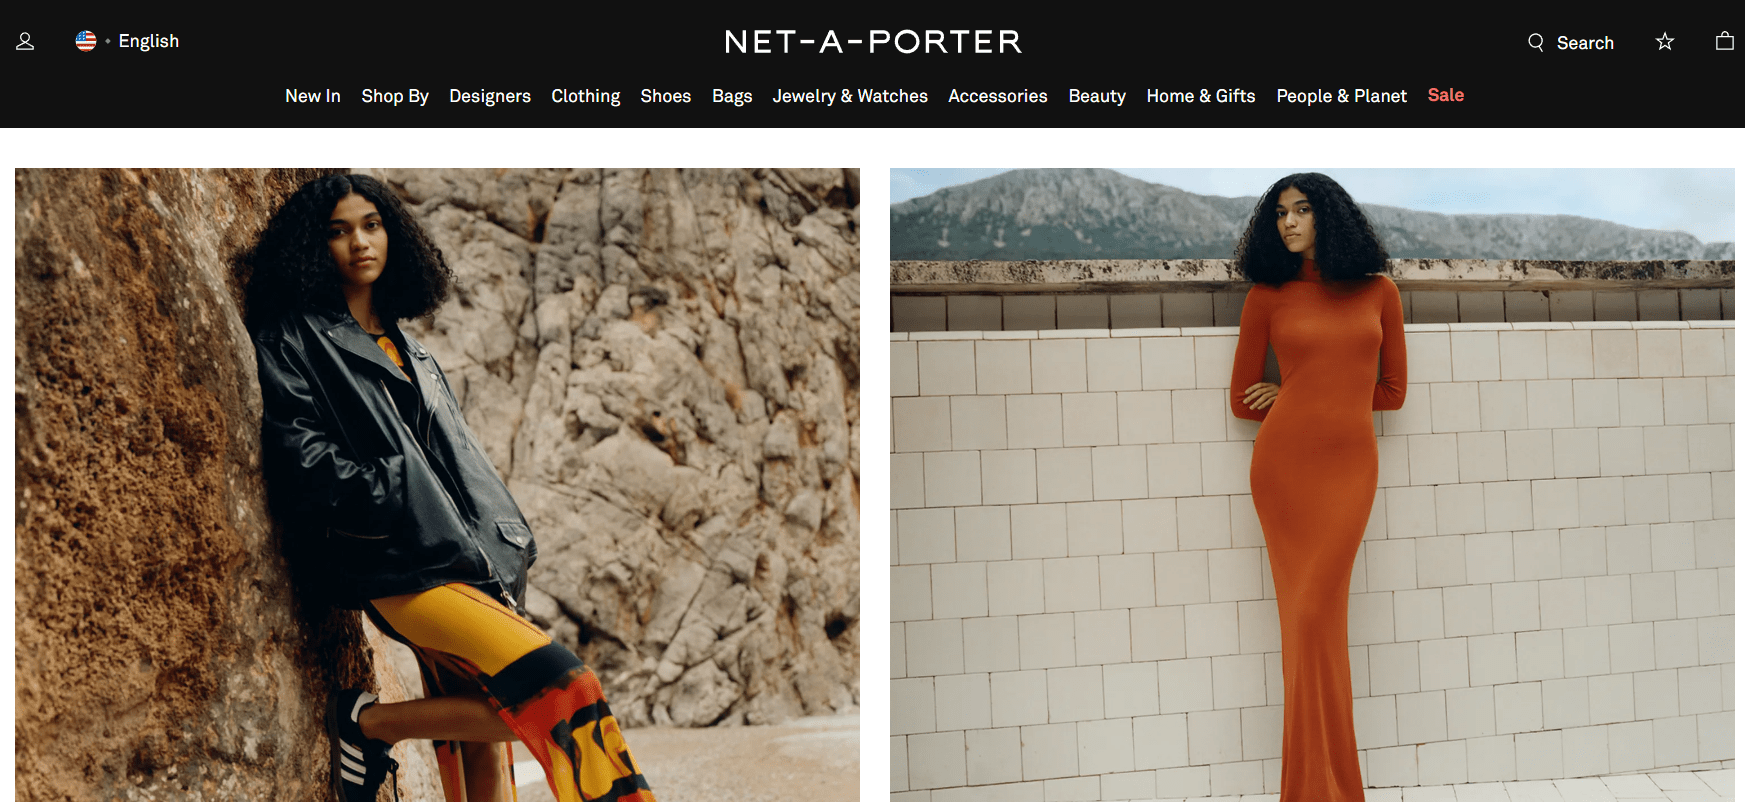 NET-A-PORTER Fashion Affiliate Programs